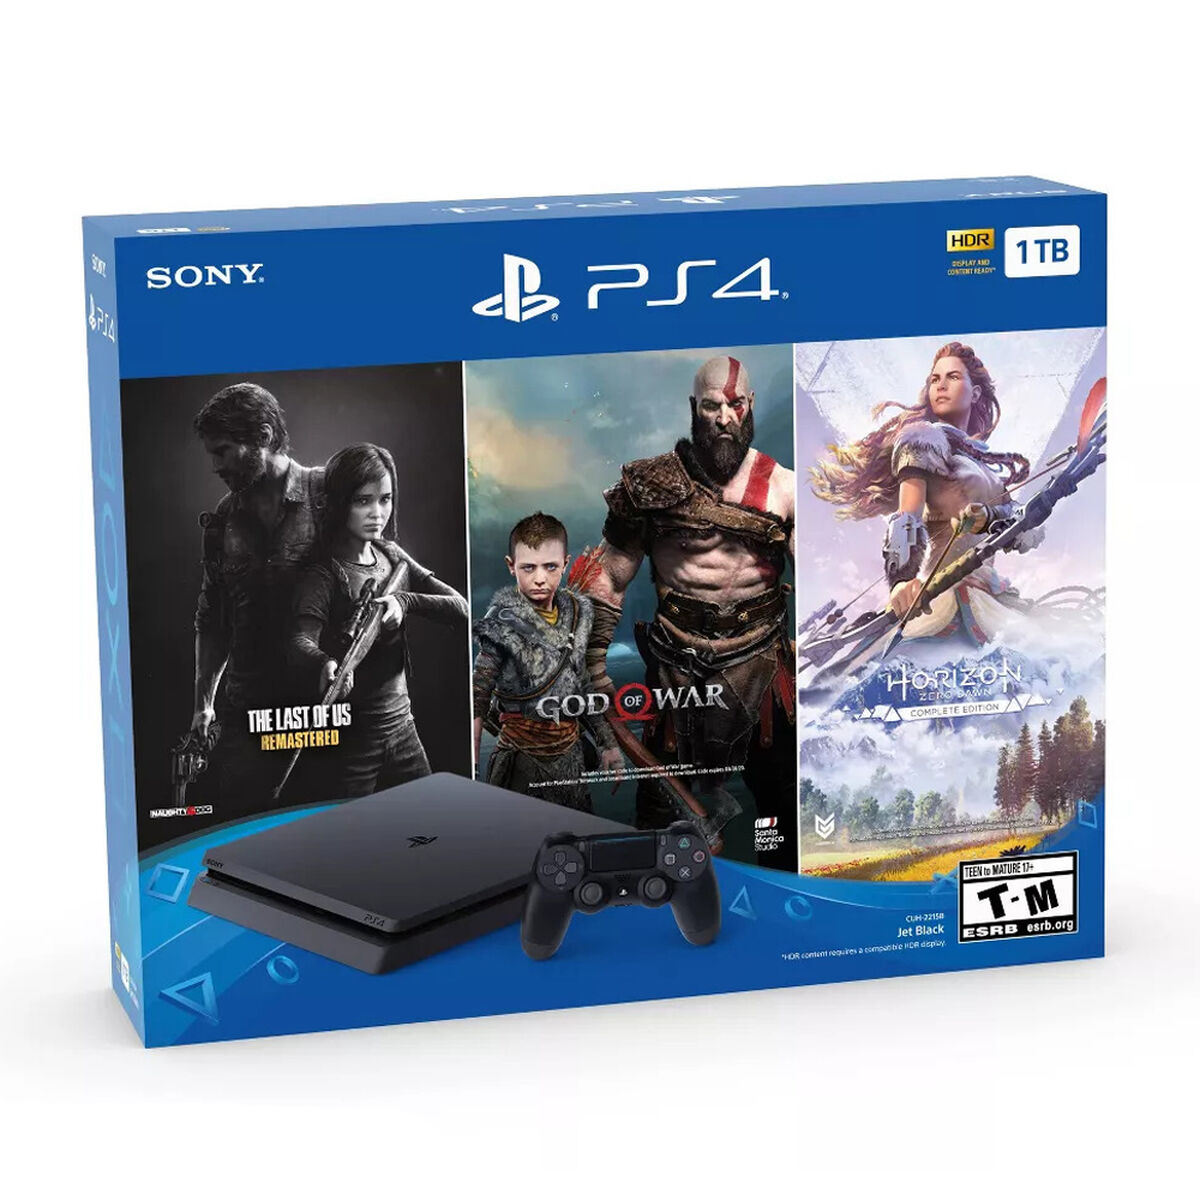 Bundle PS4 1TB + Control inalámbrico dualshock + 3 Juegos The Last of Us: Remastered, God of War y Horizon Zero Dawn